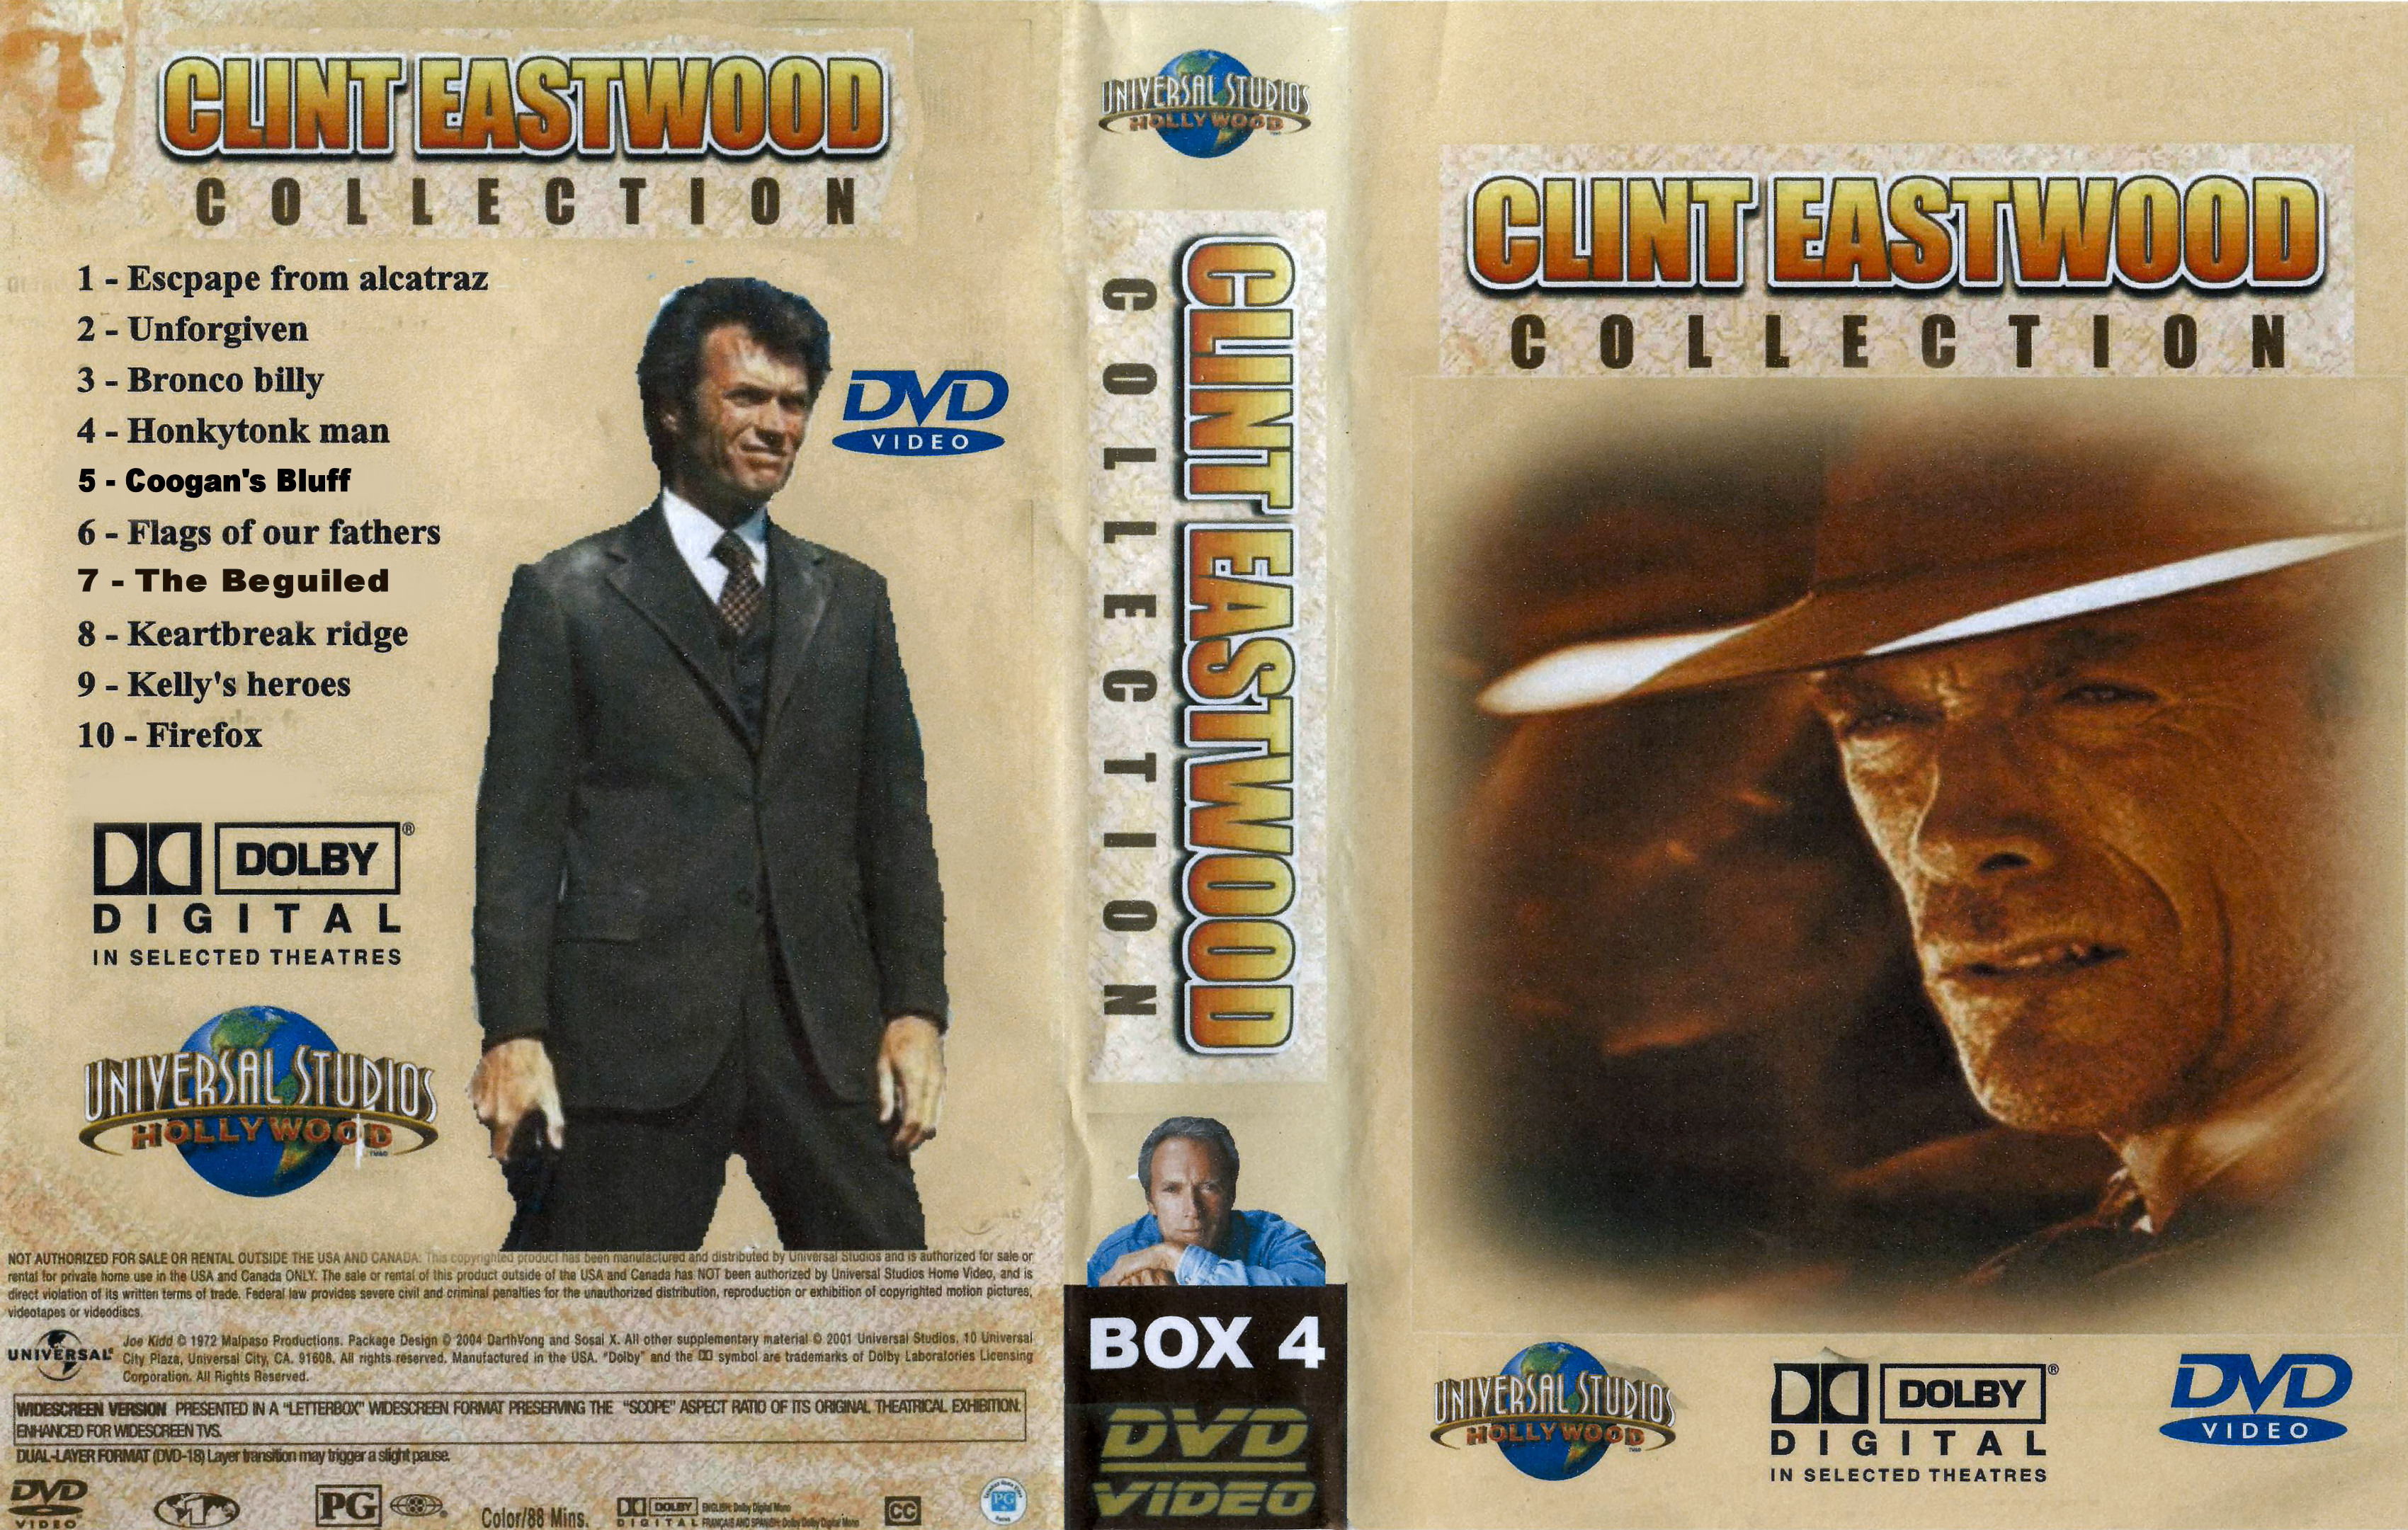 Clint Eastwood Collectie Box 4 DvD 8 van 10